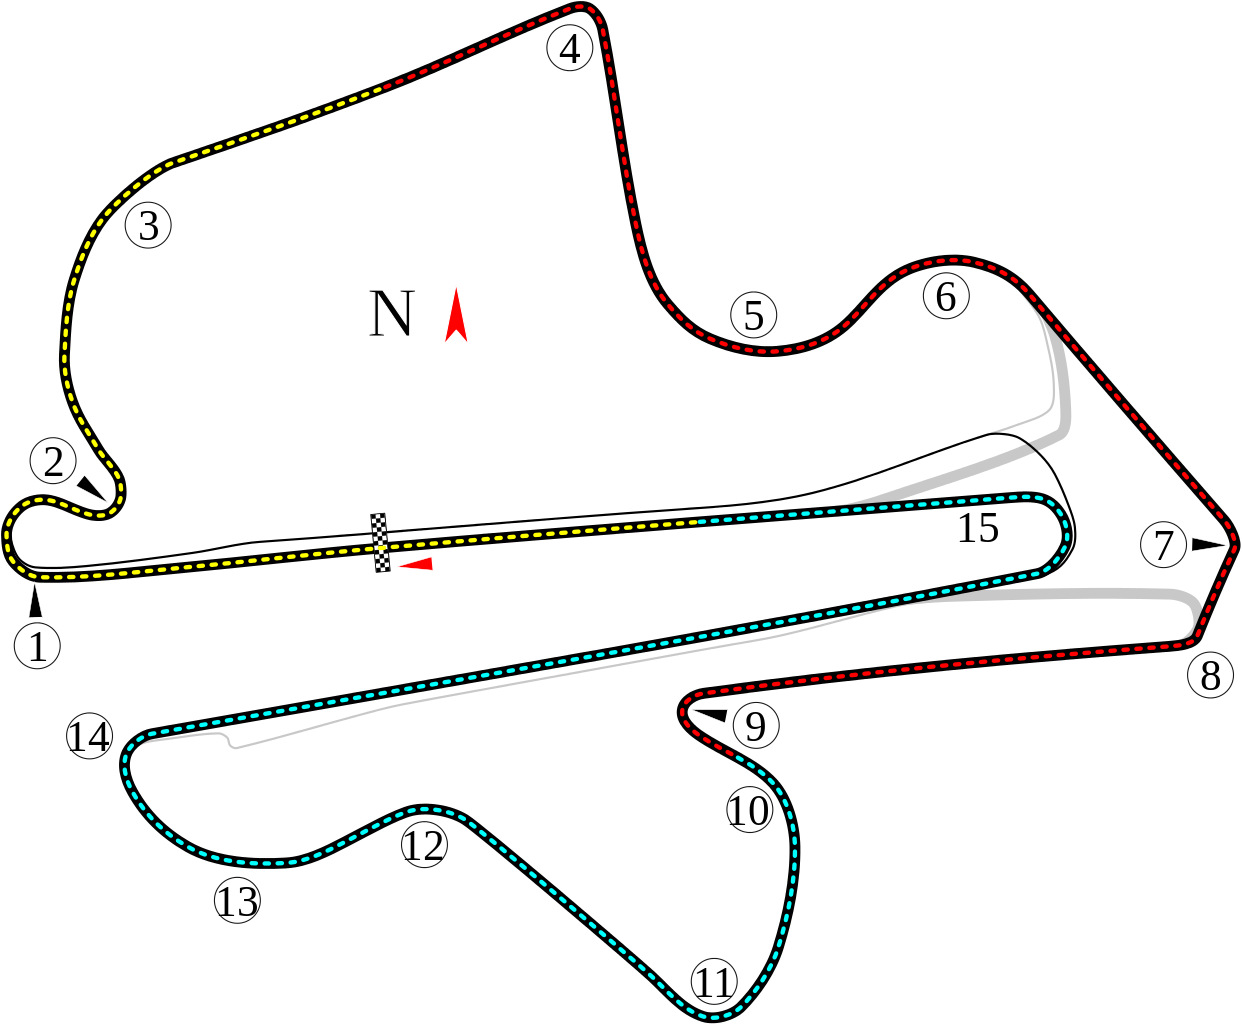 Il layout del circuito di Sepang (foto da: en.wikipedia.org)